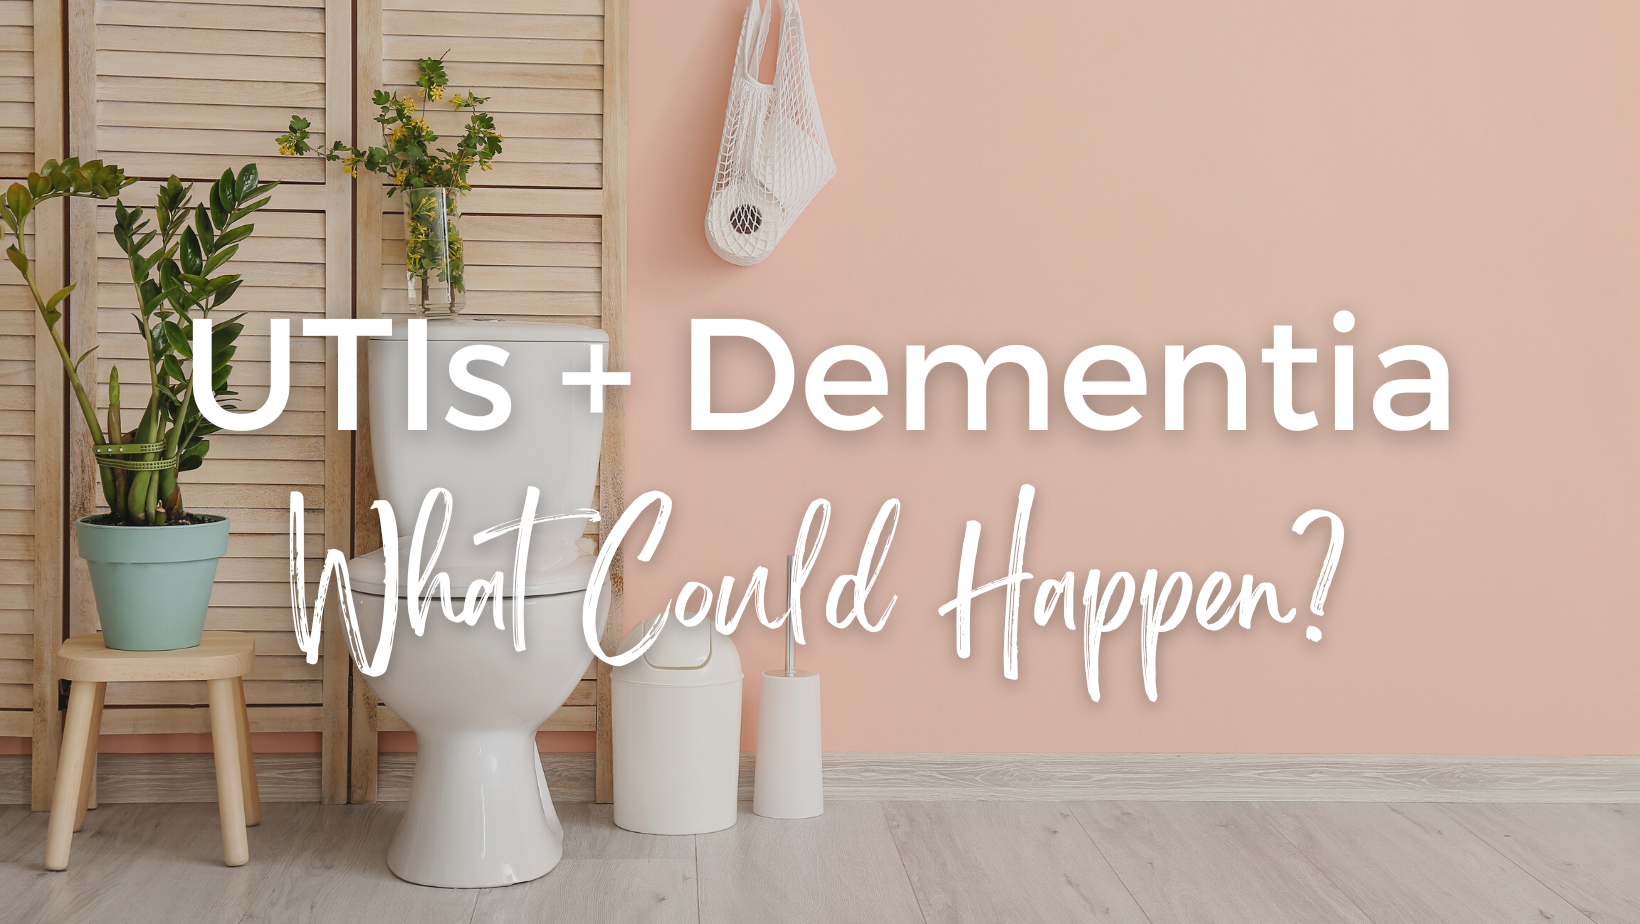 UTIs and Dementia